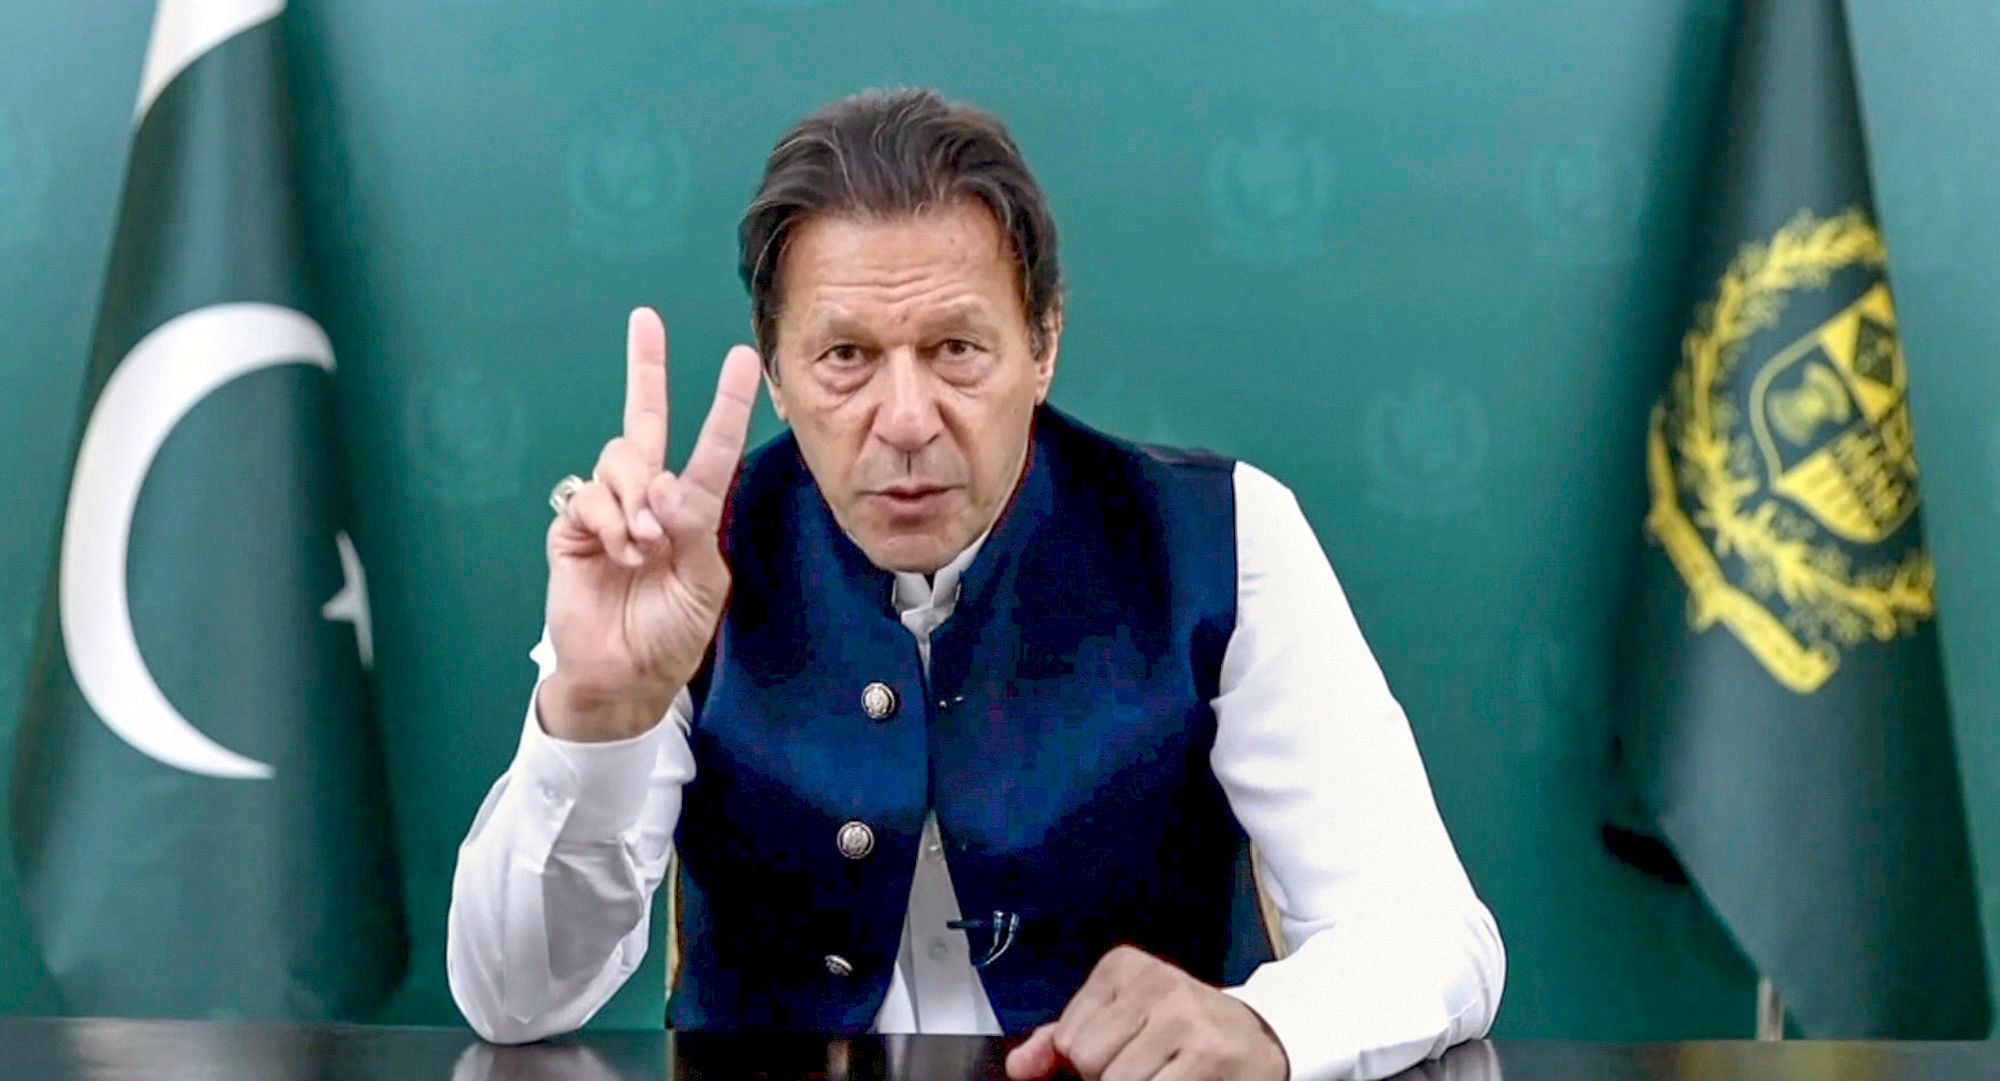 पाकिस्तान में सरकार बनाए रखने के लिए इमरान खान को कितनी सीटें चाहिए?